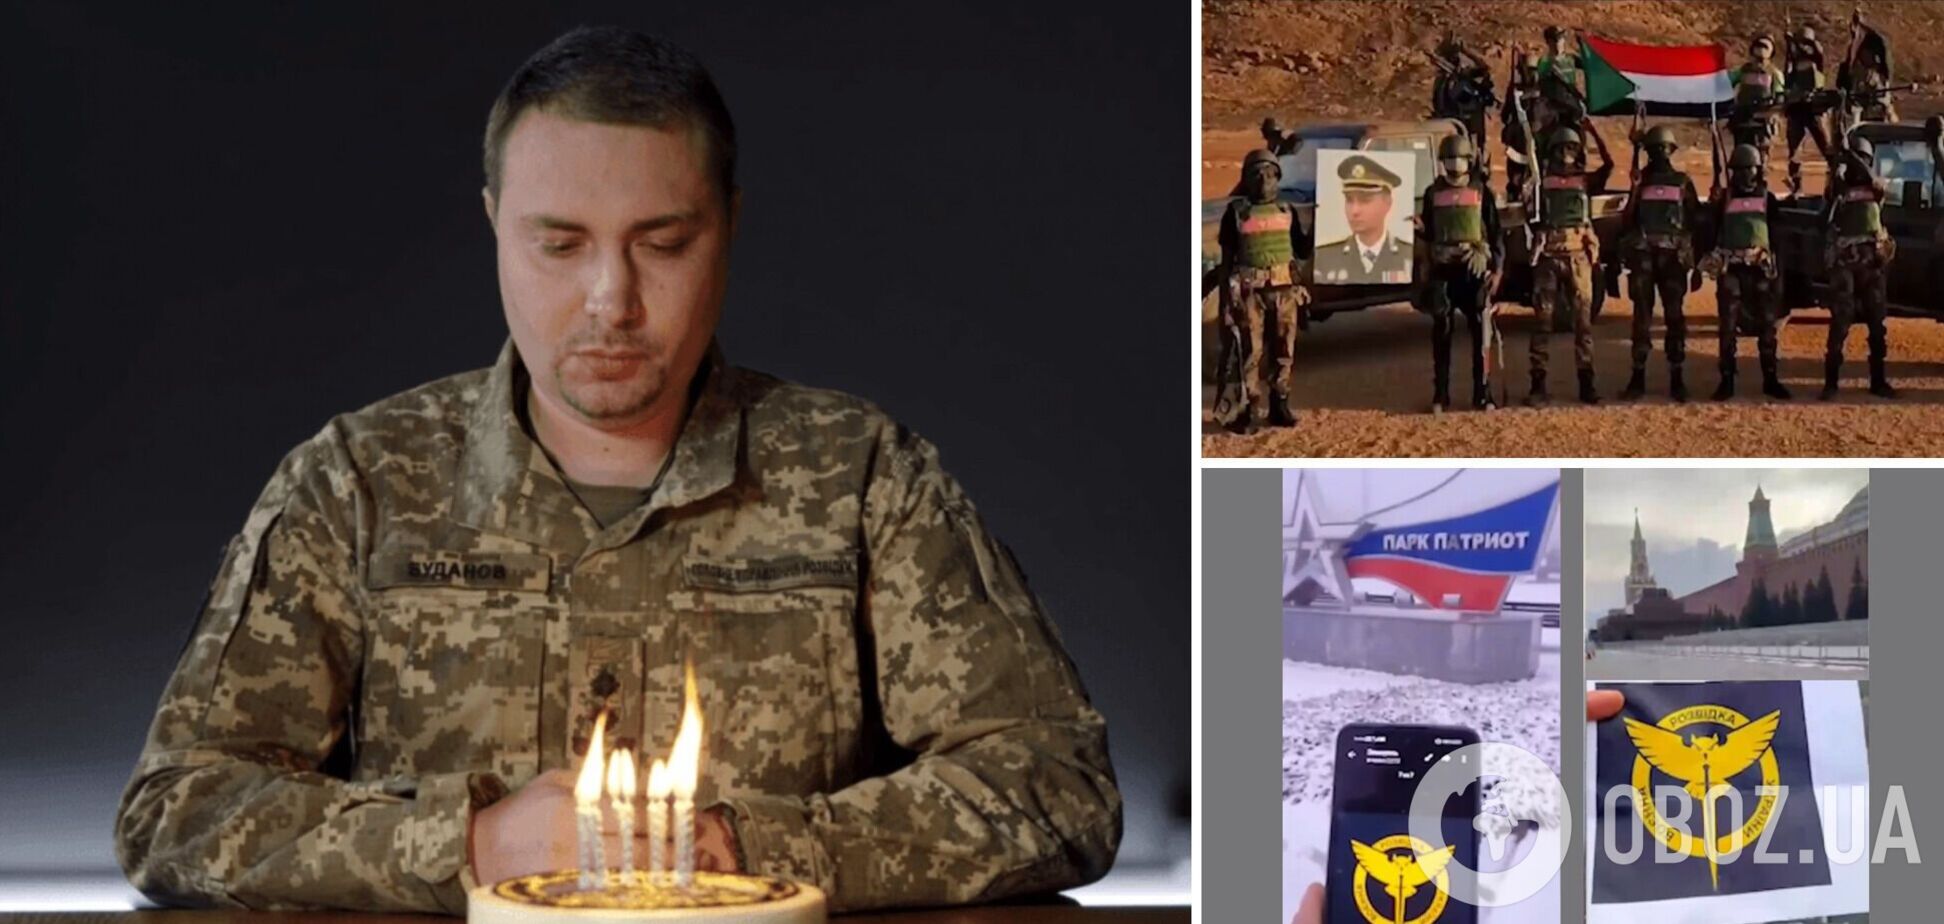 Невідомі патріоти з усього світу привітали Буданова з днем народження. Відео